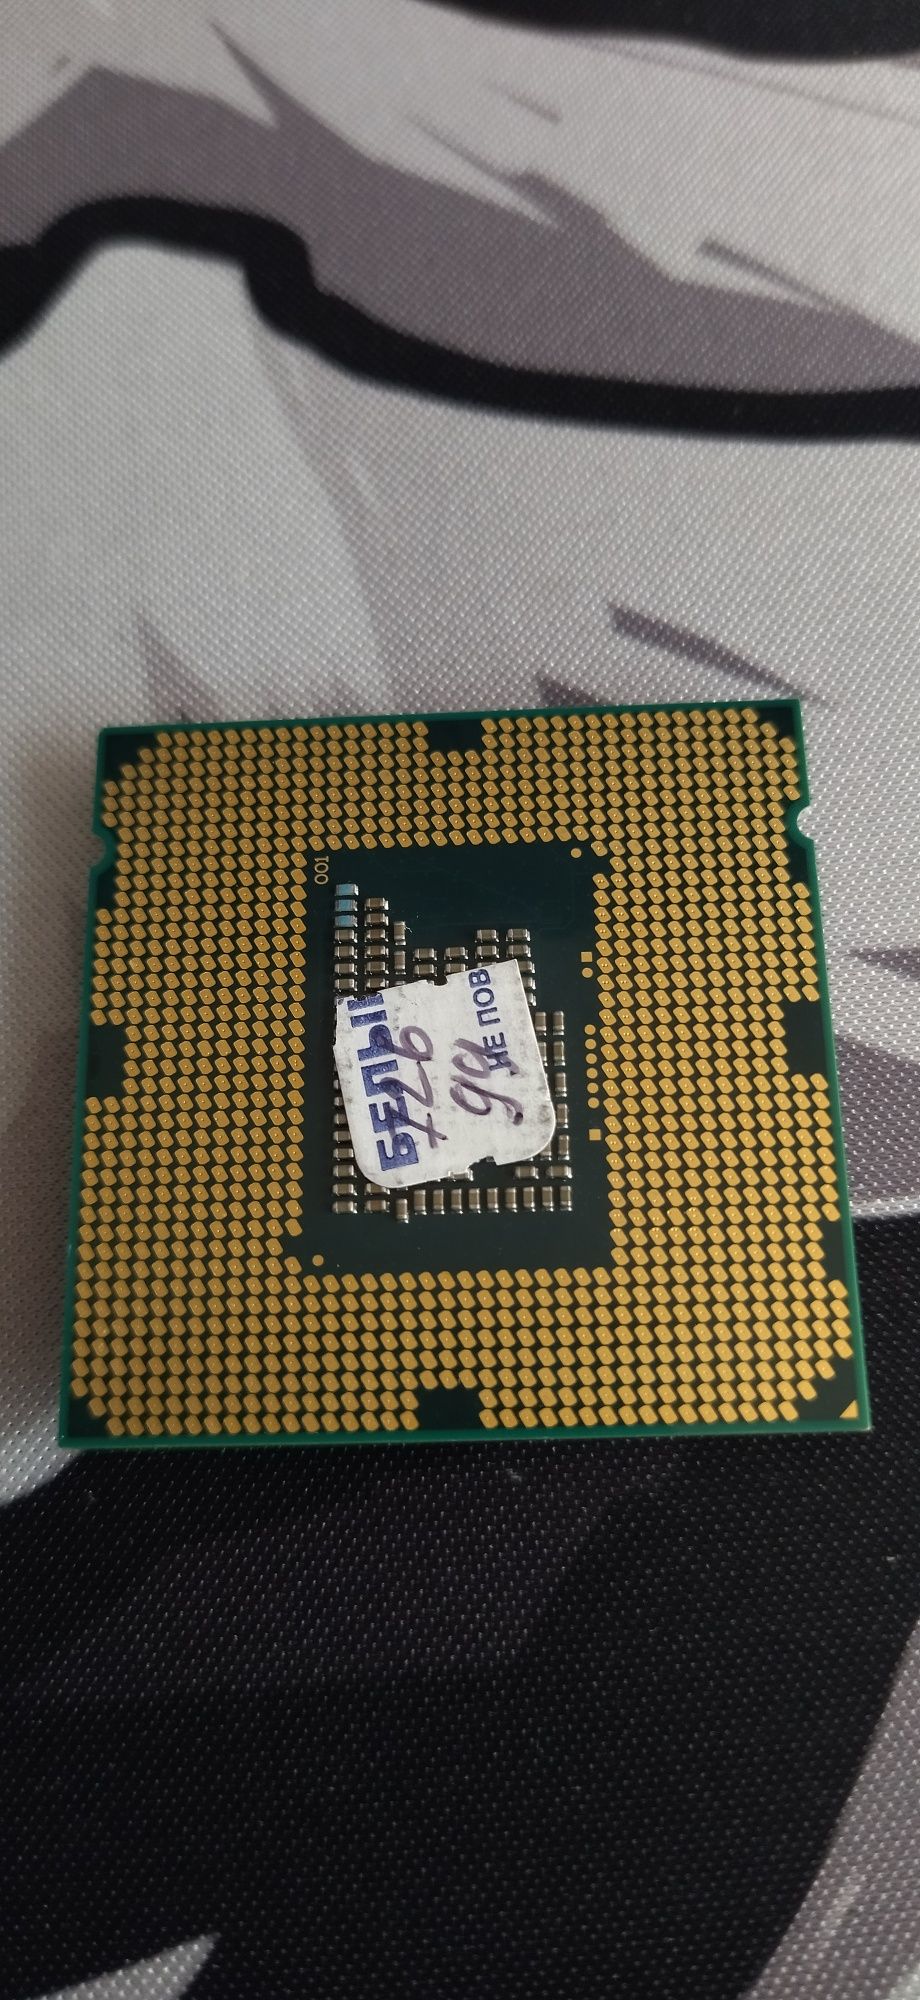 Процессор Intel Celeron G530,OEM
Часто